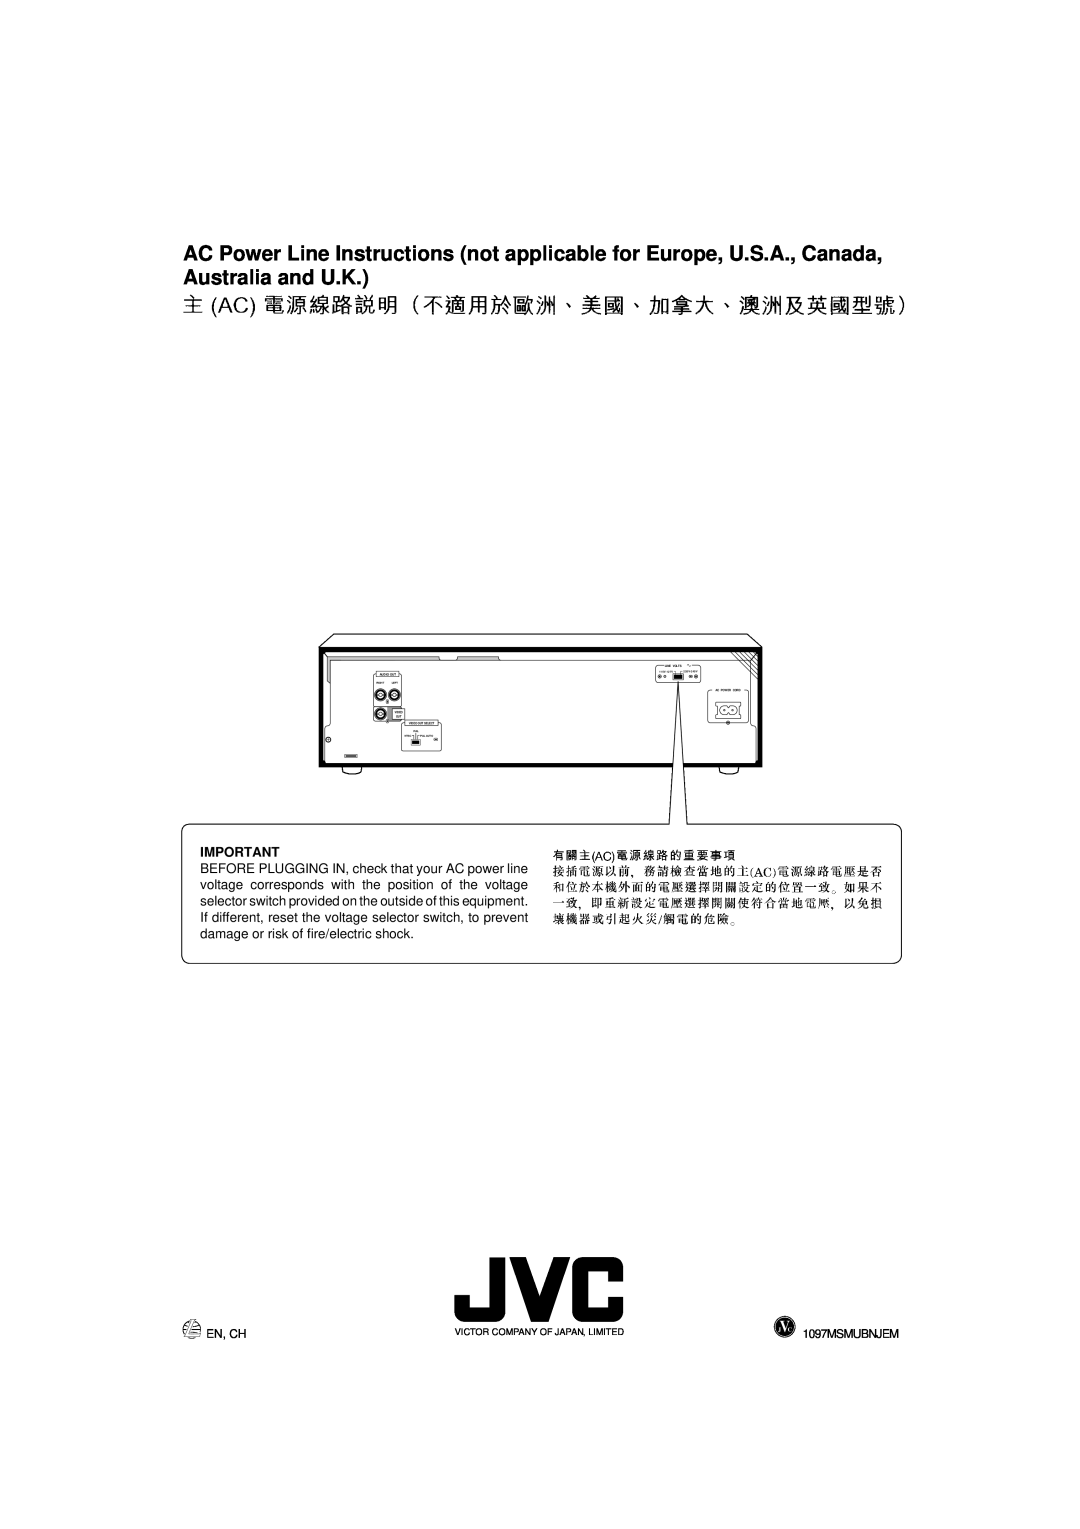 JVC XL-SV22BK, LET0088-001A manual En, Ch, 1097MSMUBNJEM 